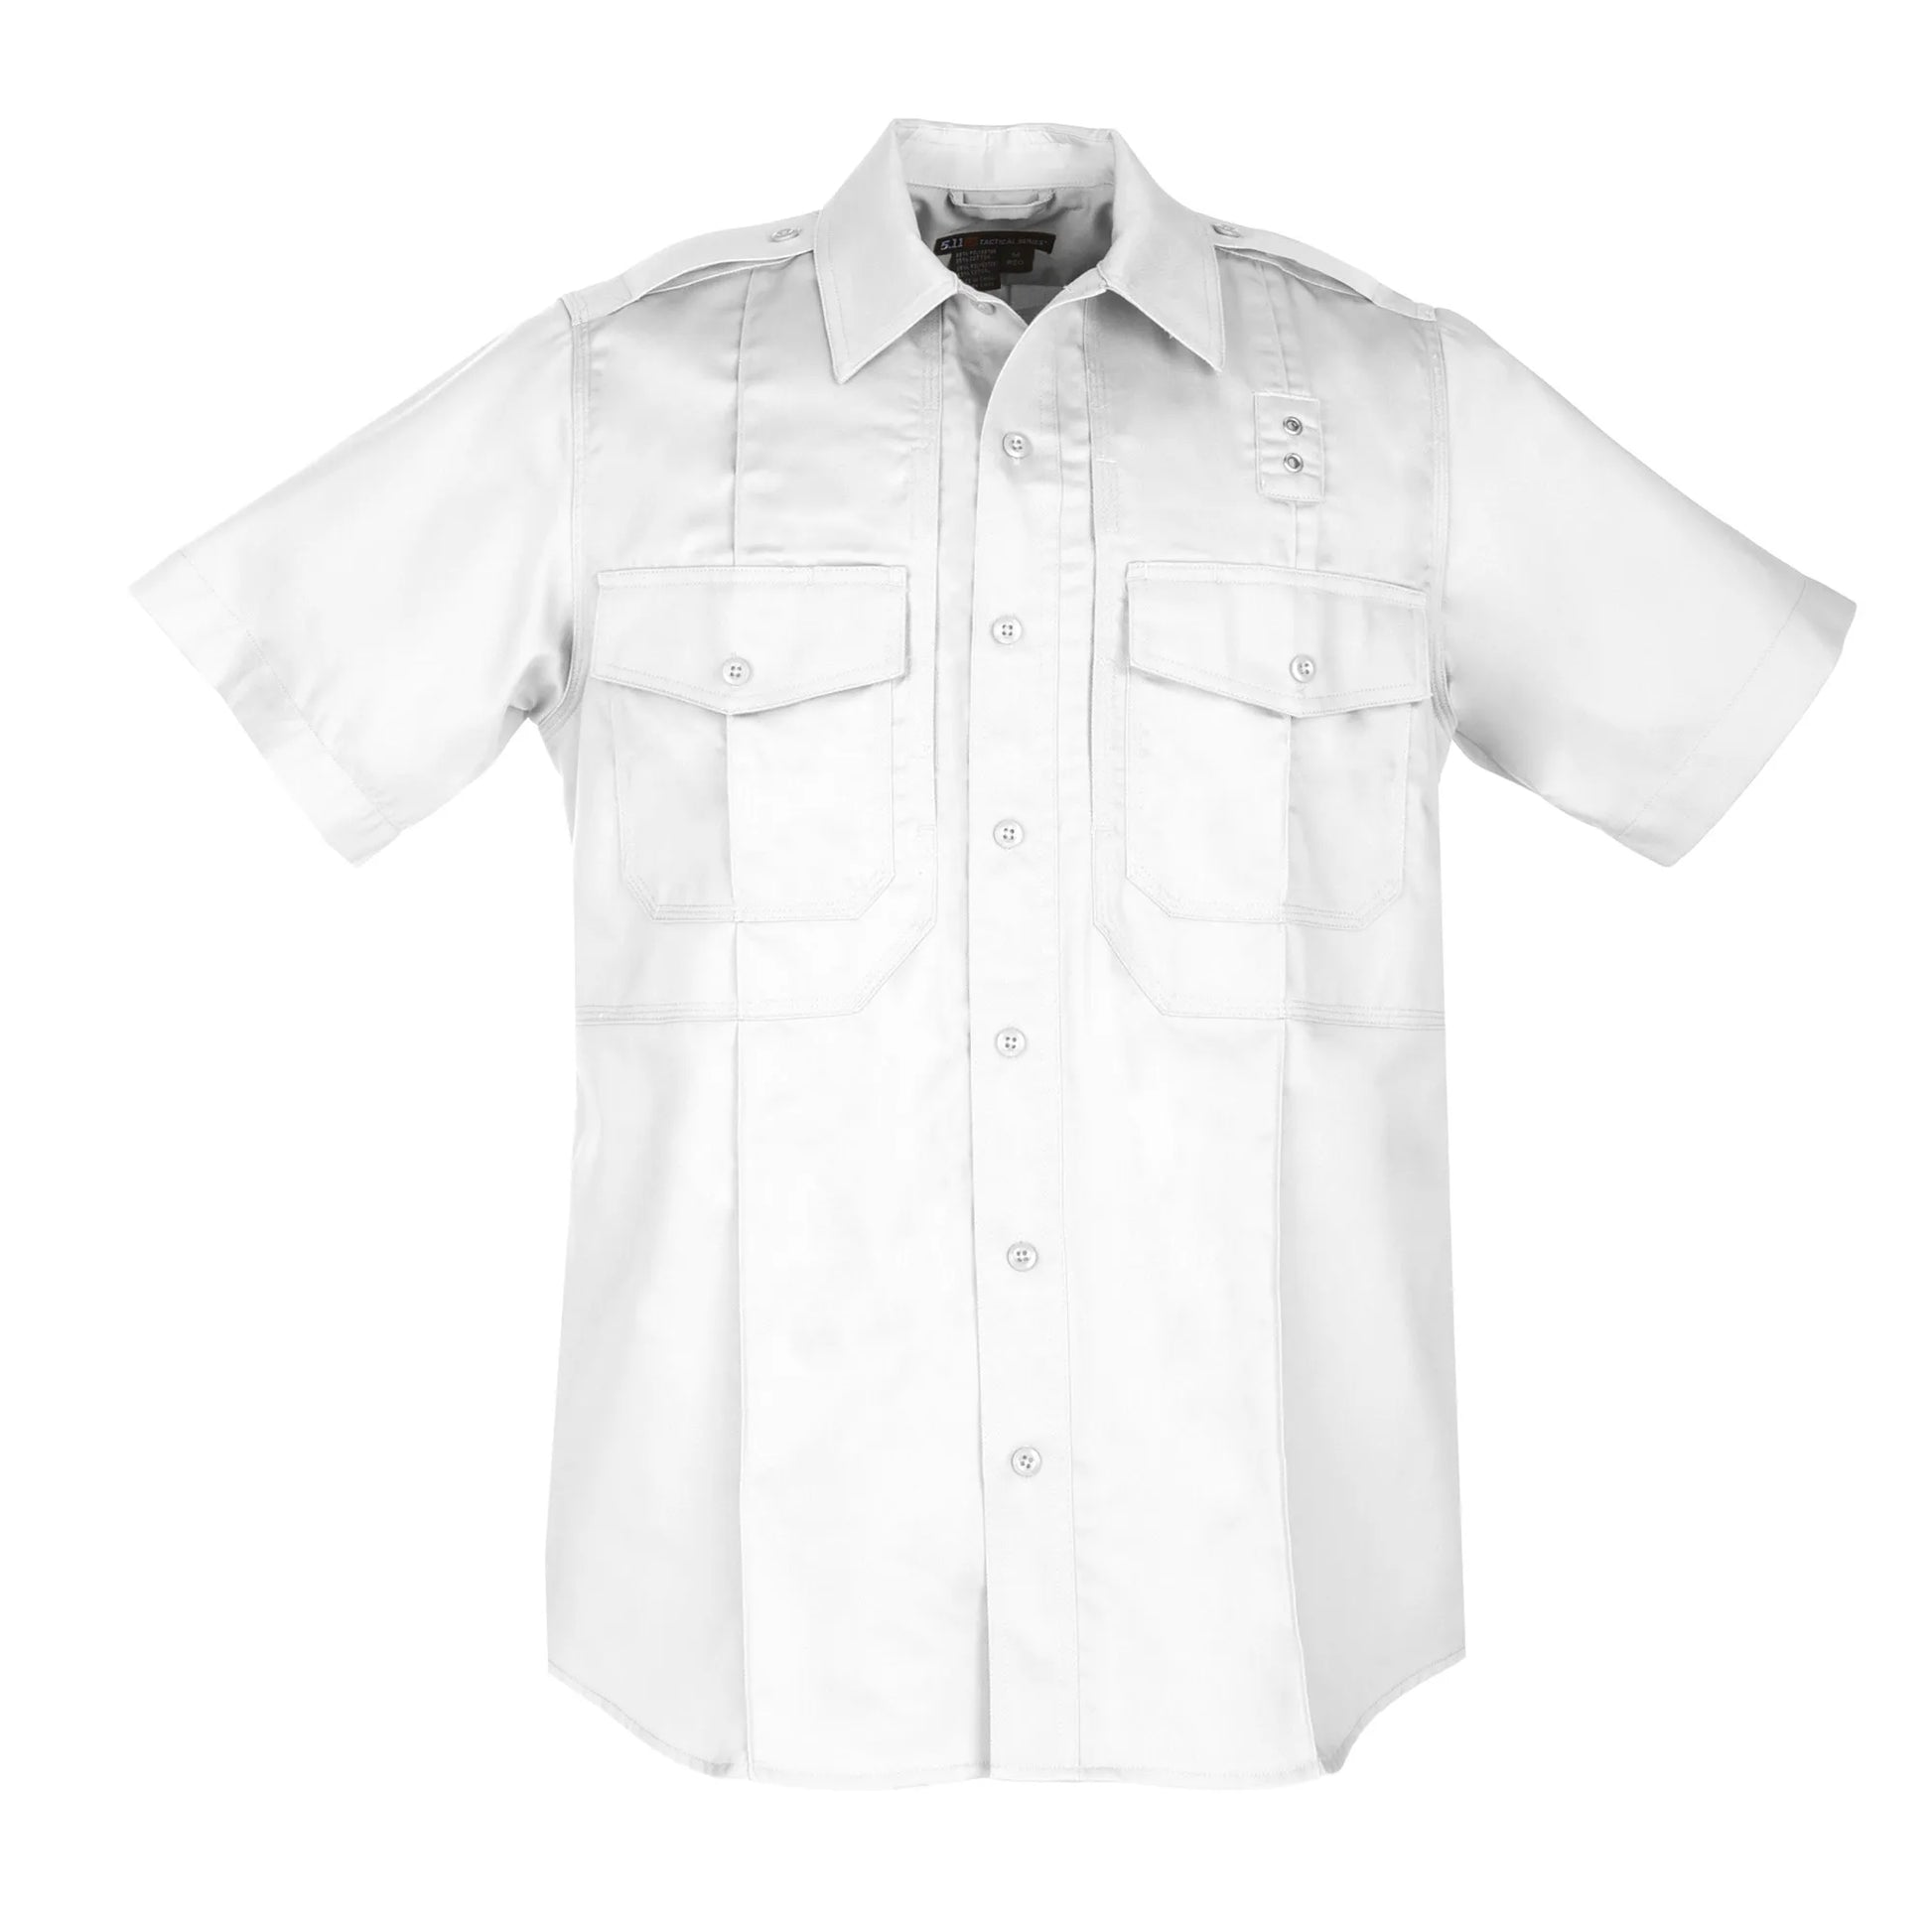 5.11 Tactical TWILL PDU Class B Short Sleeve Shirt